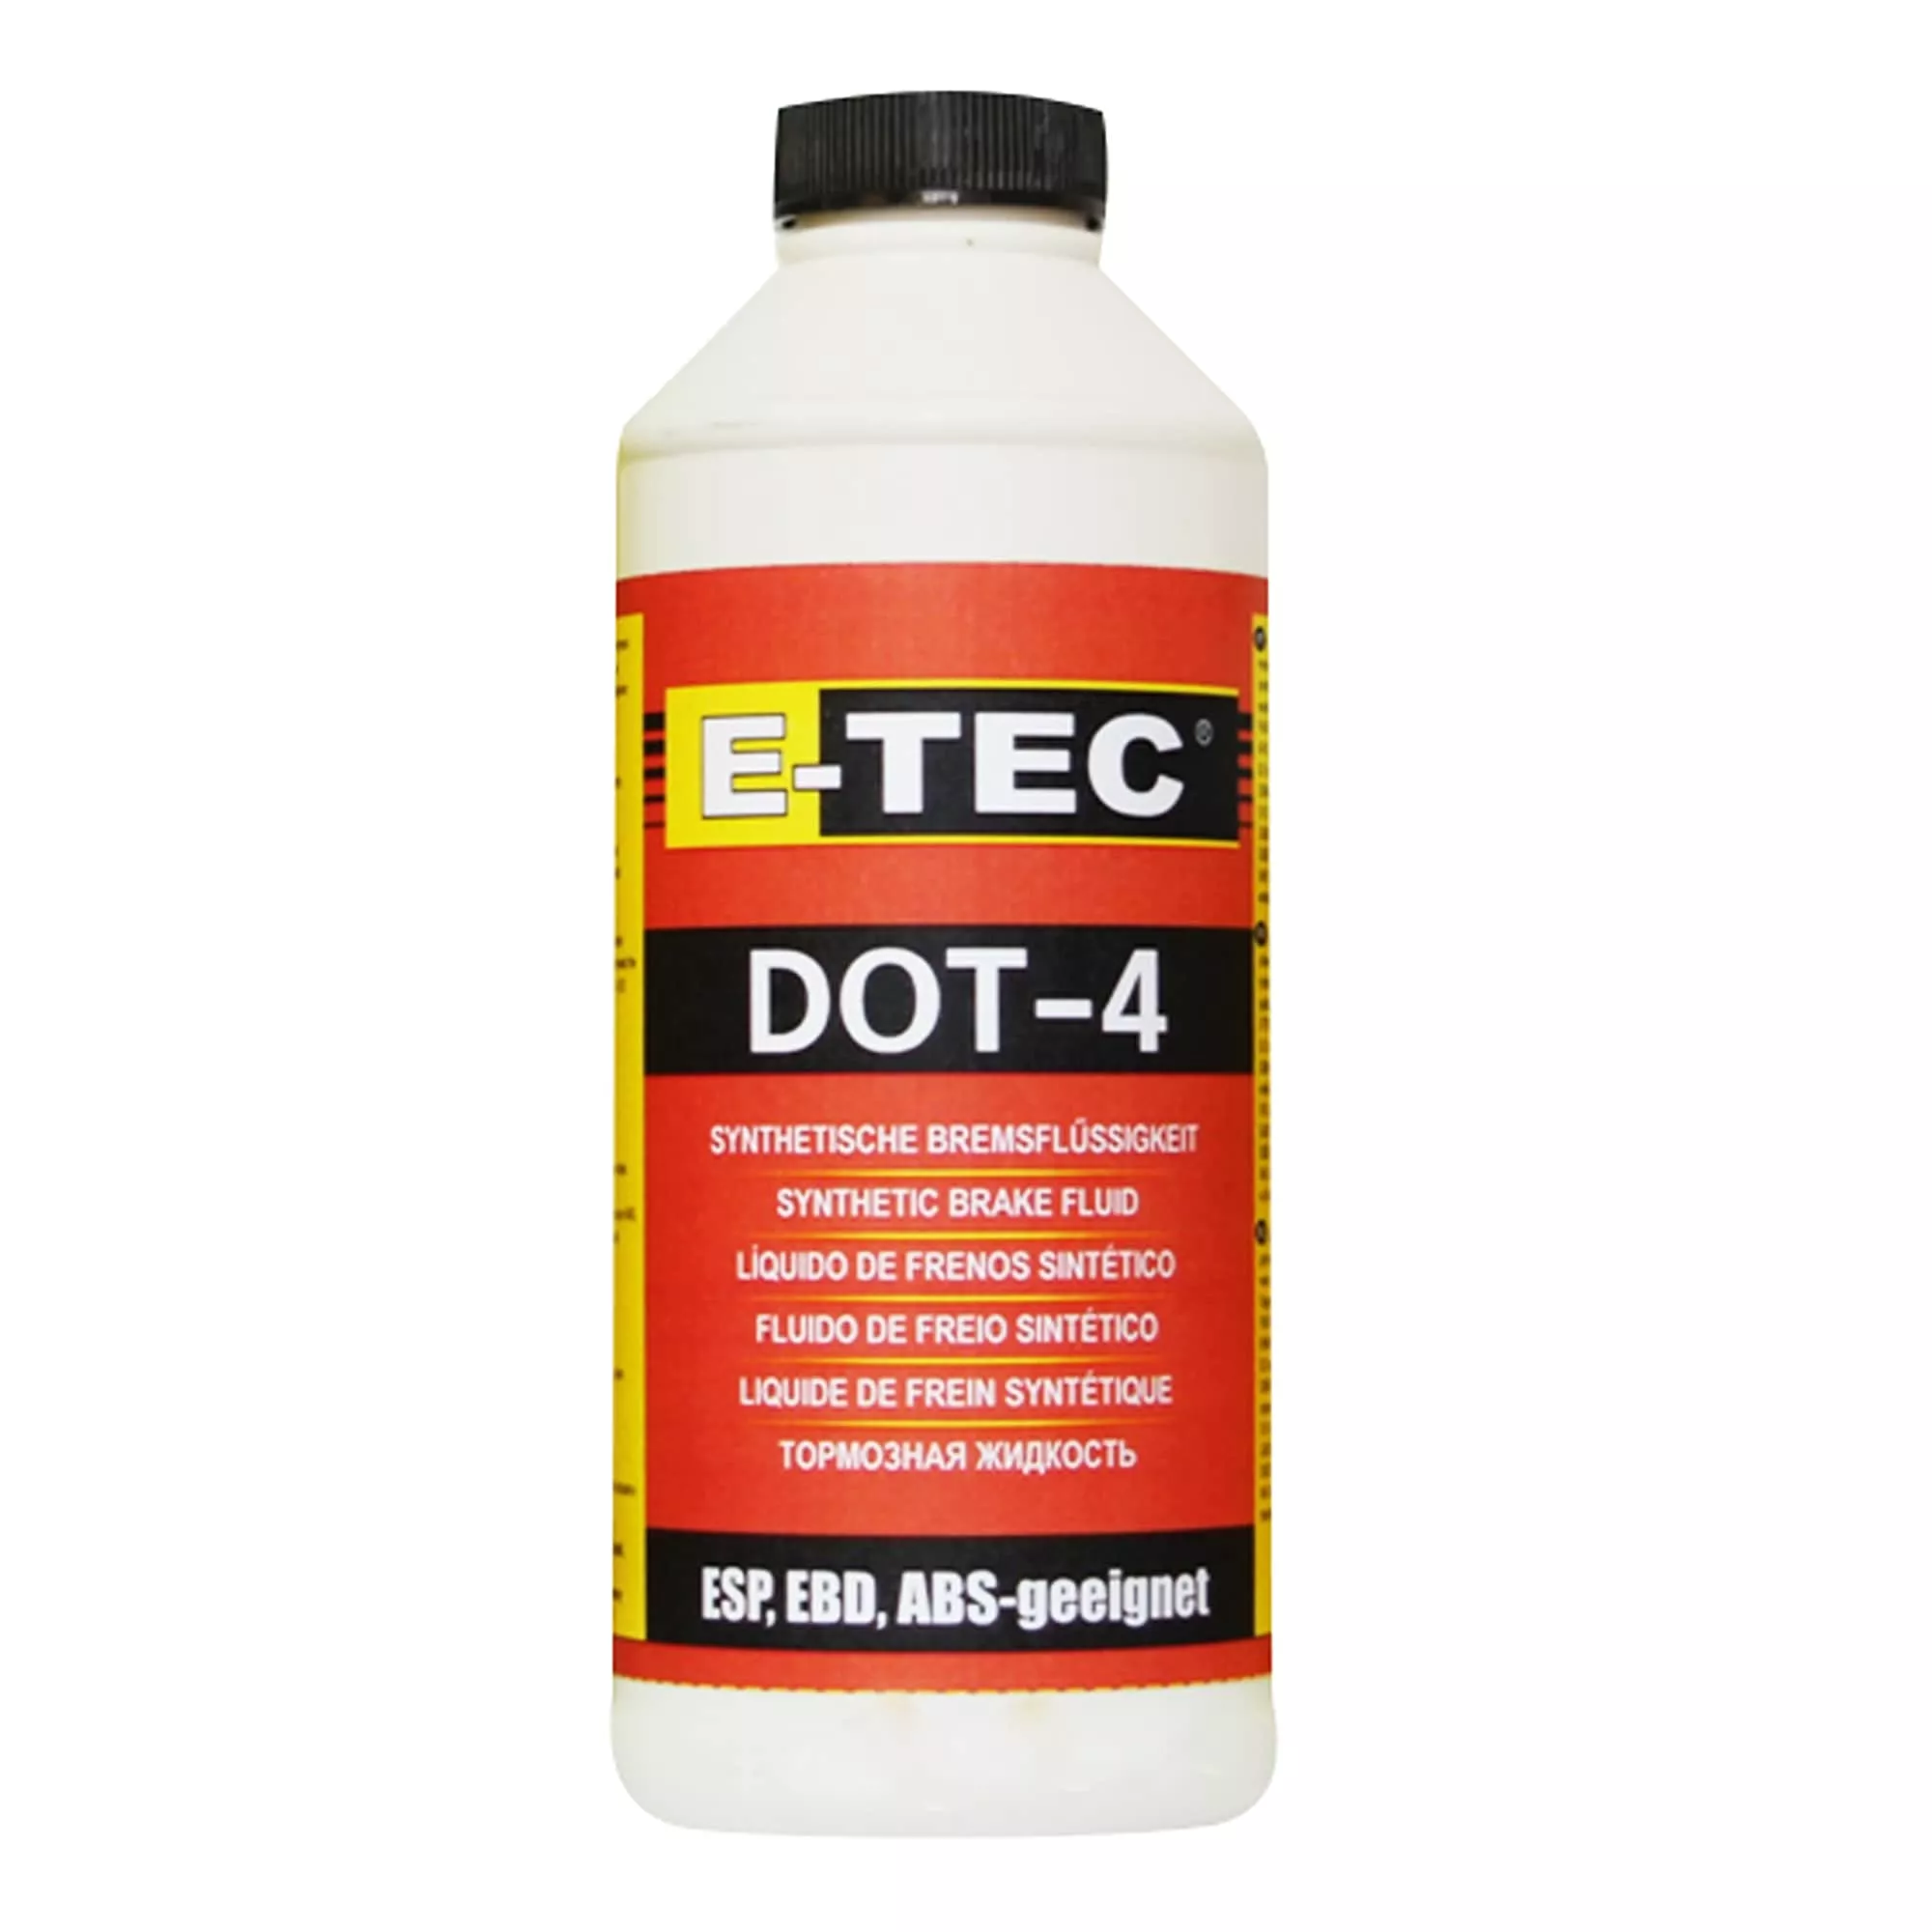 Тормозная жидкость E-TEC ДОТ-4 п/е 1л (2864)